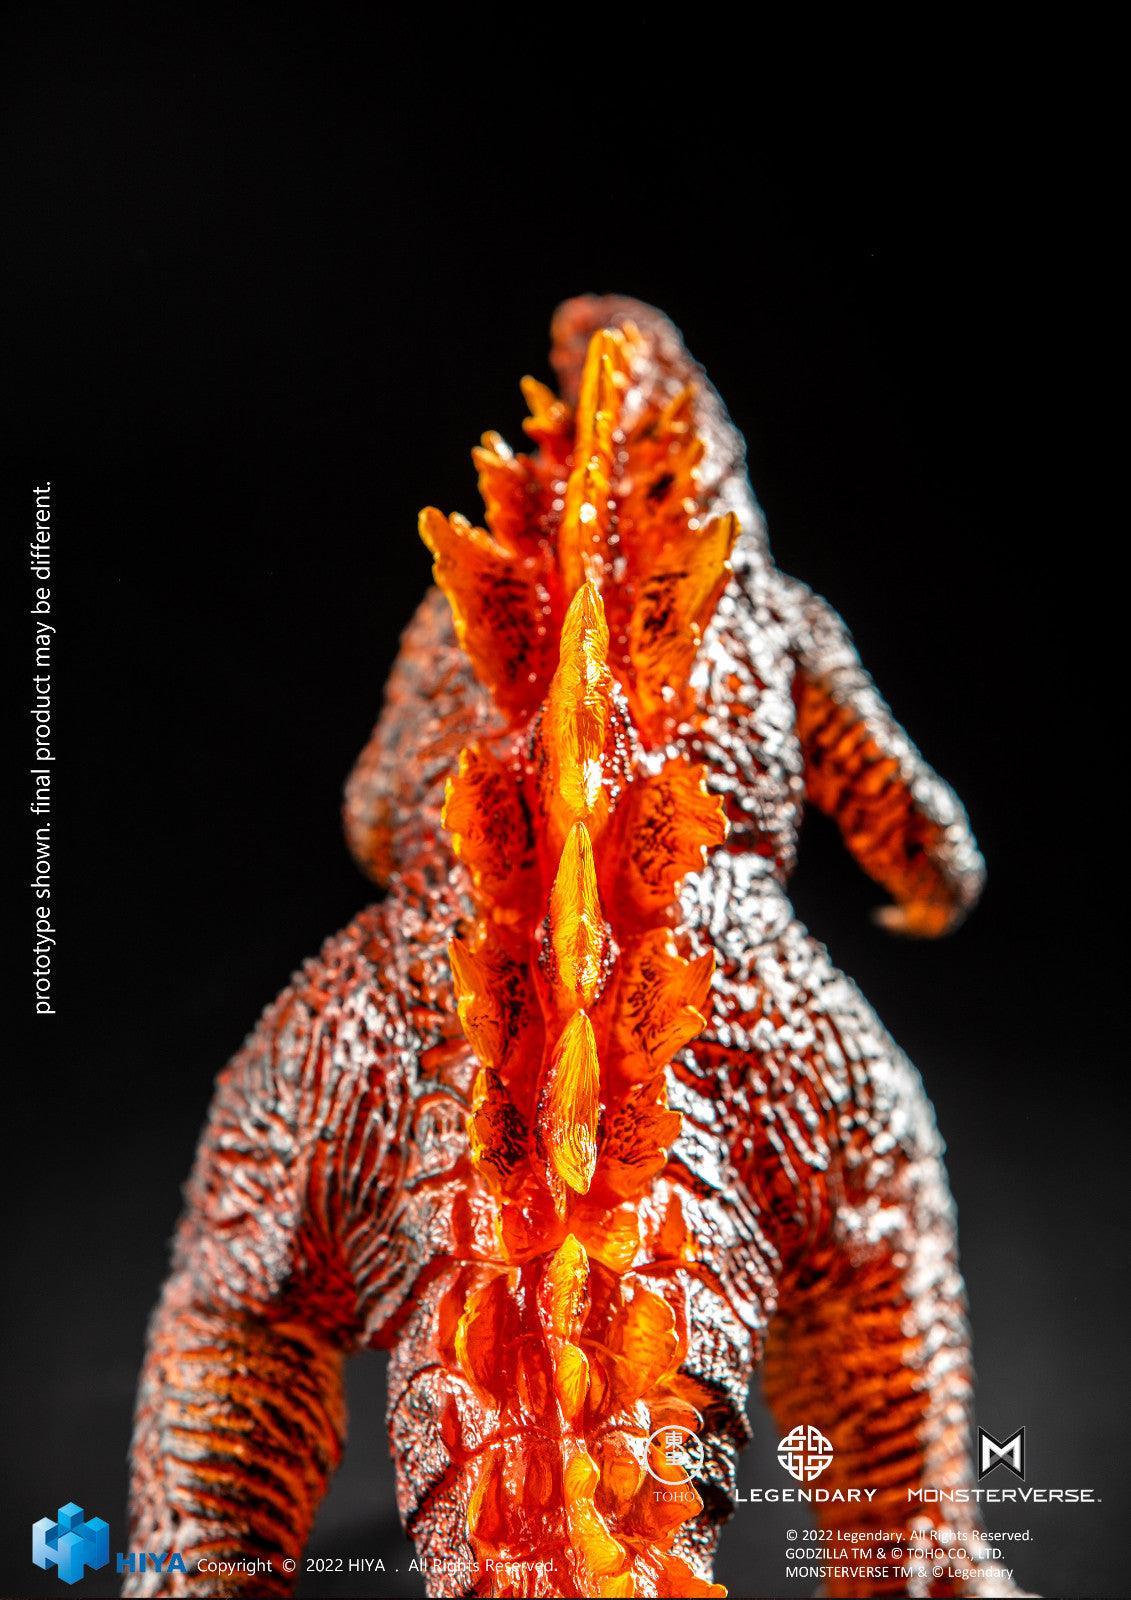 HIYA - Burning Godzilla Figure